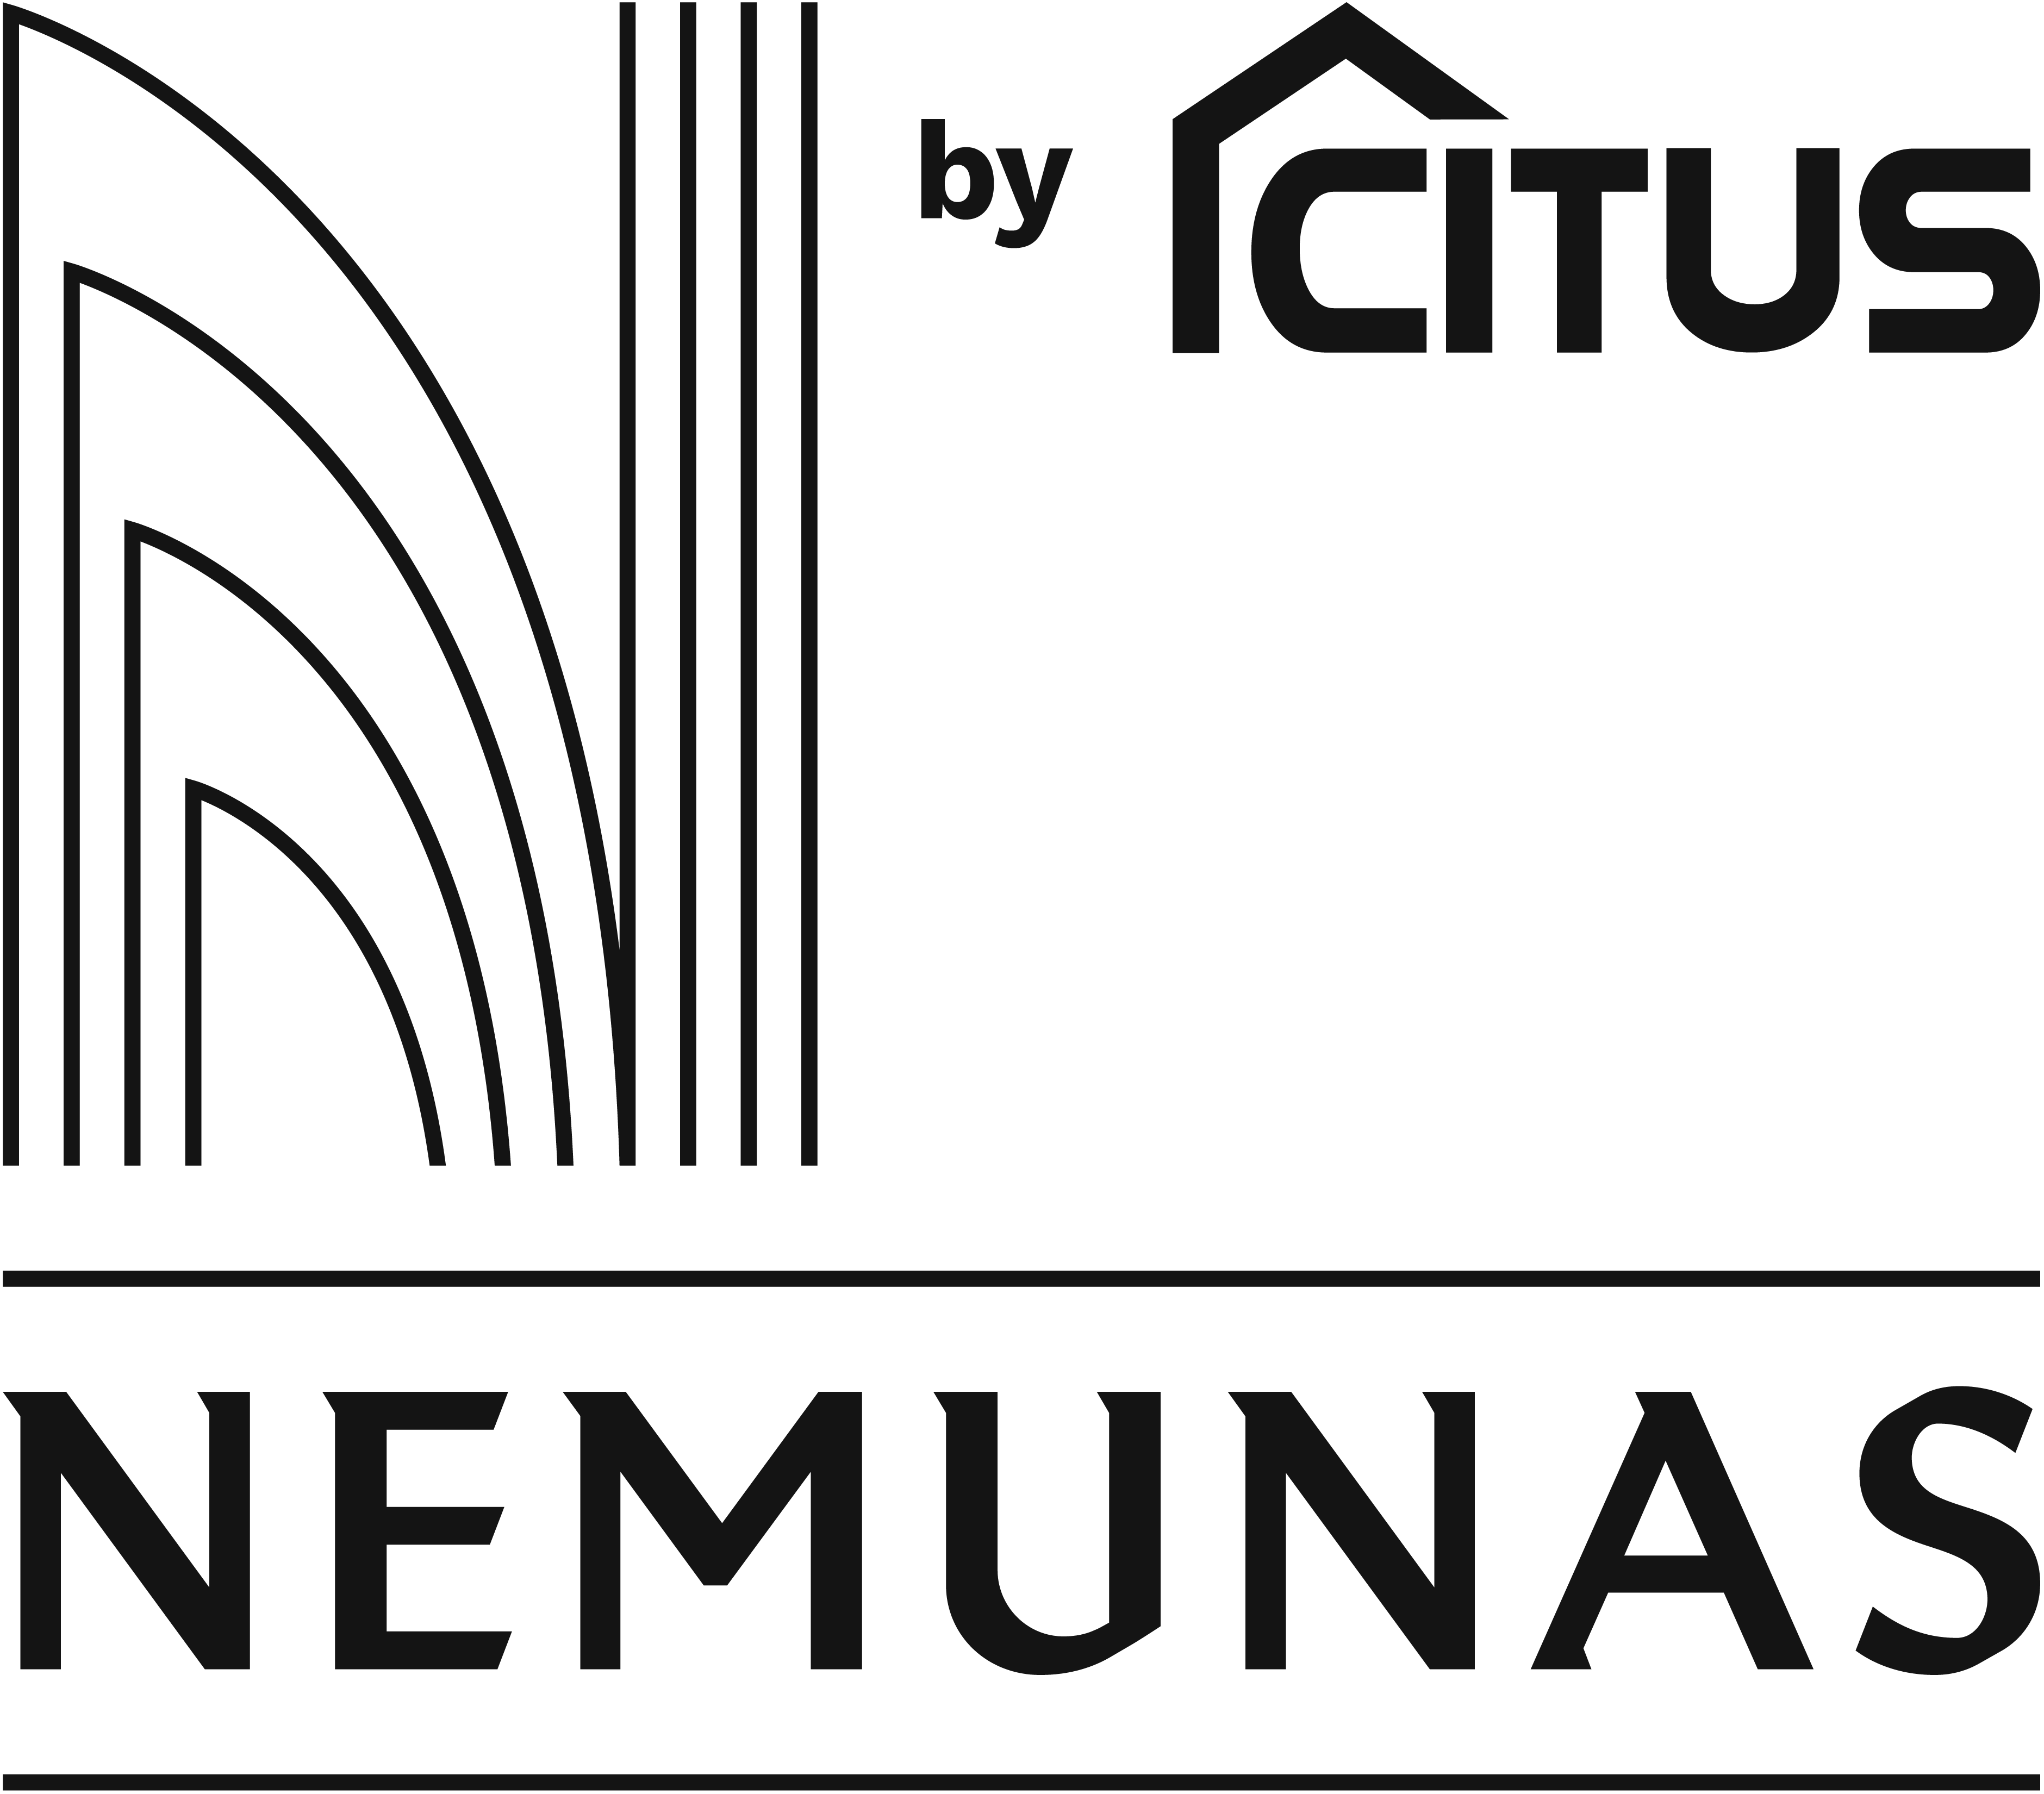 NEMUNAS by CITUS